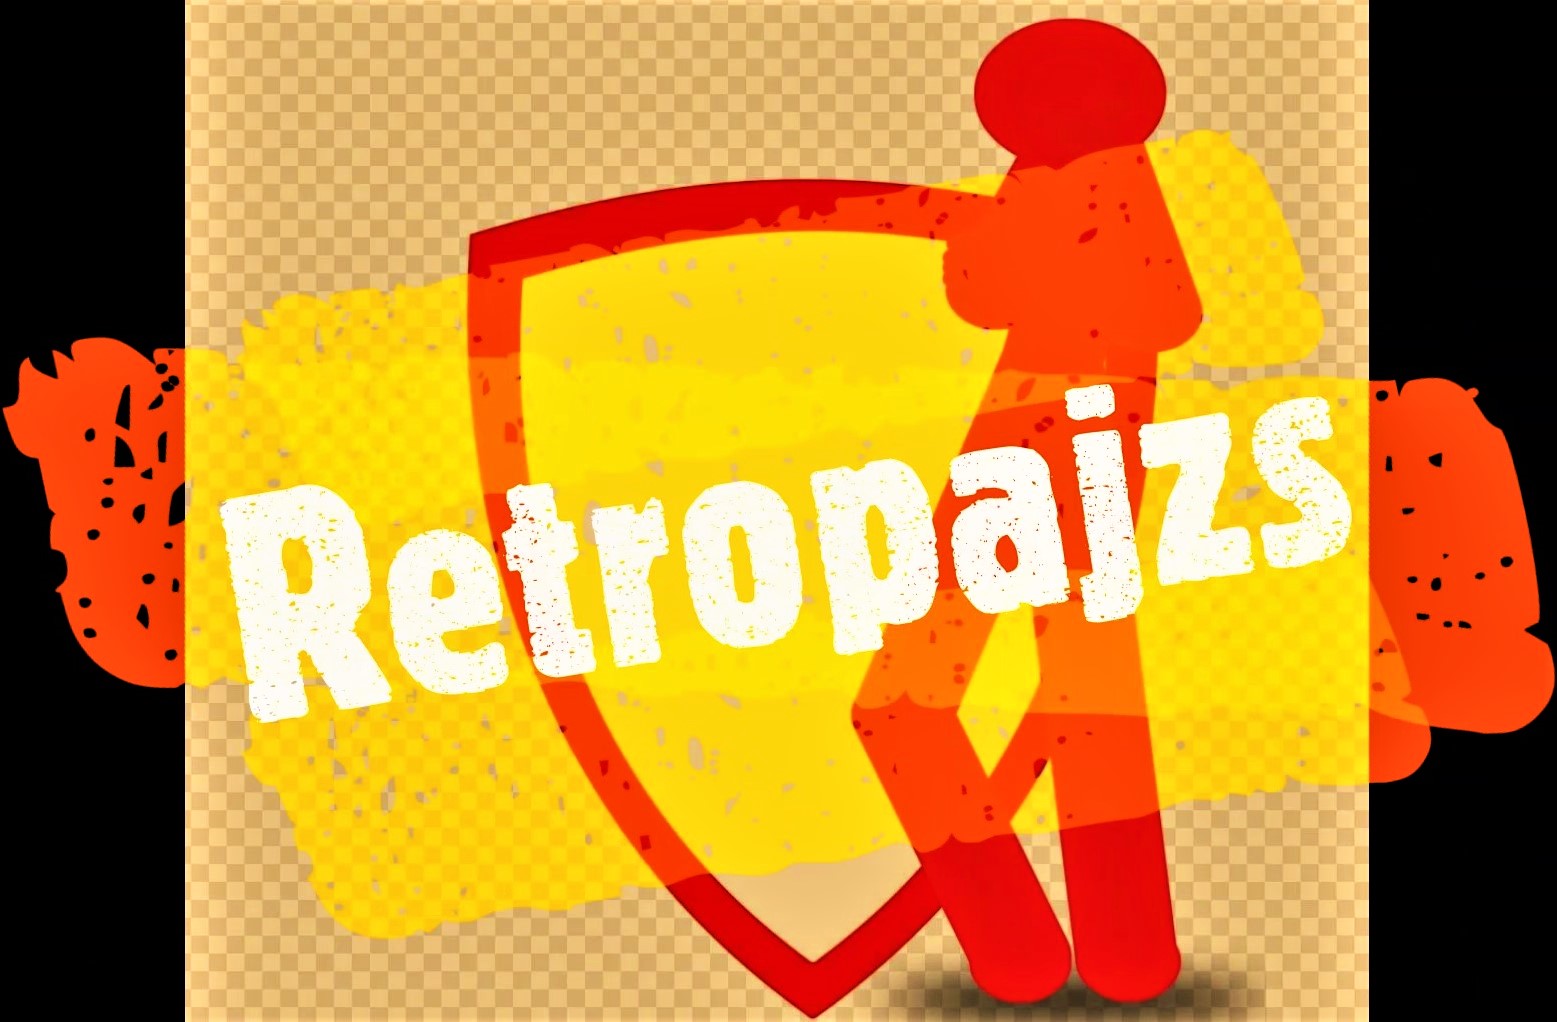 Retropajzs Egyesület honlapja